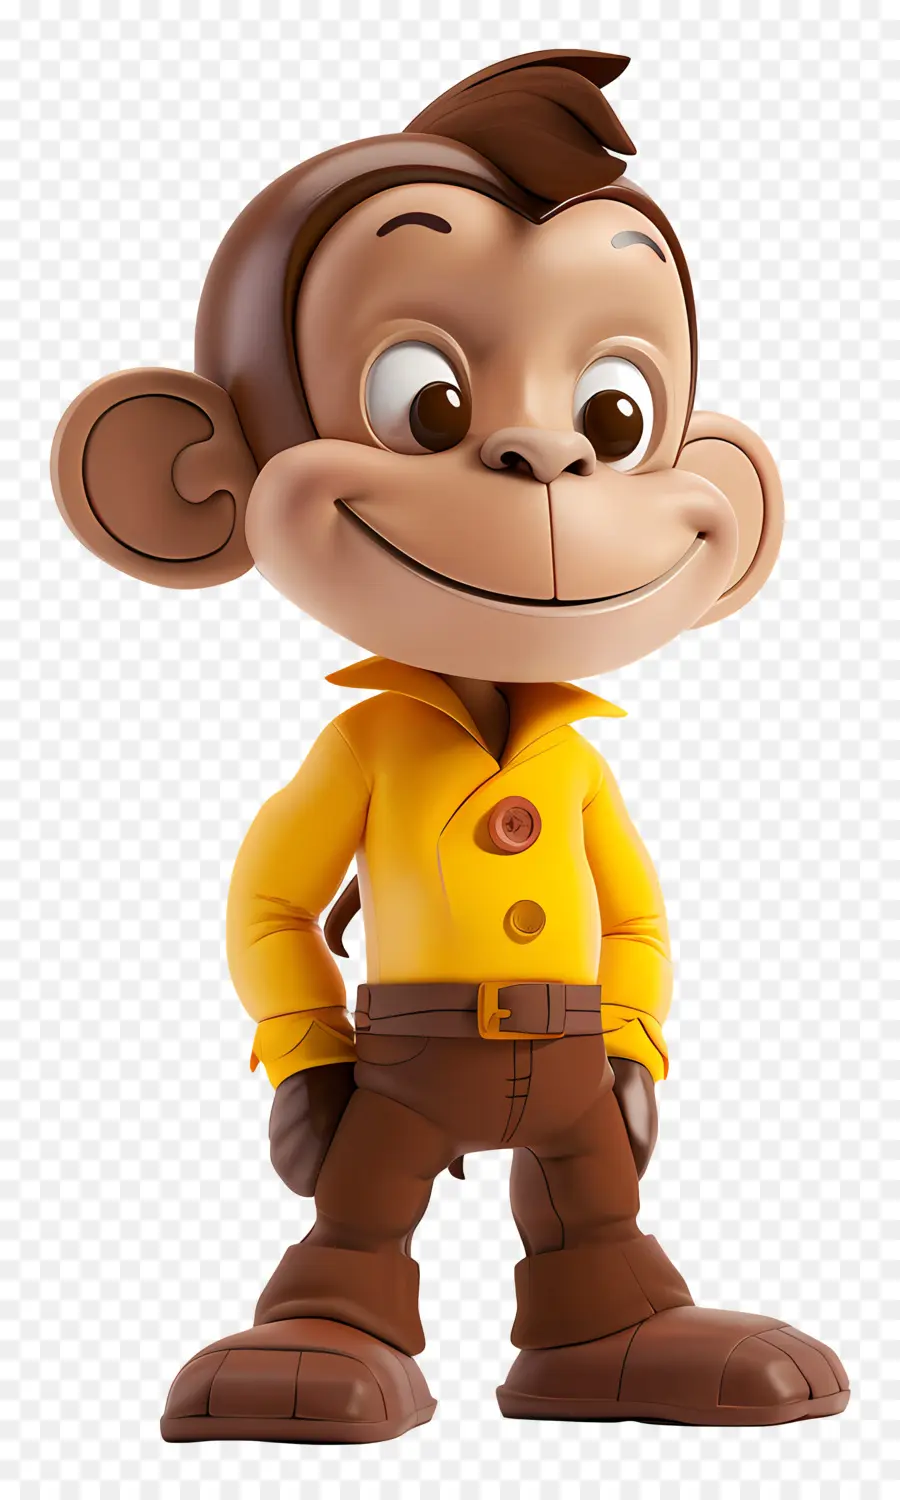 Curious George Monkey Character Shirt giallo pantaloni marroni Cappello marrone - Carattere di scimmia felice in camicia gialla